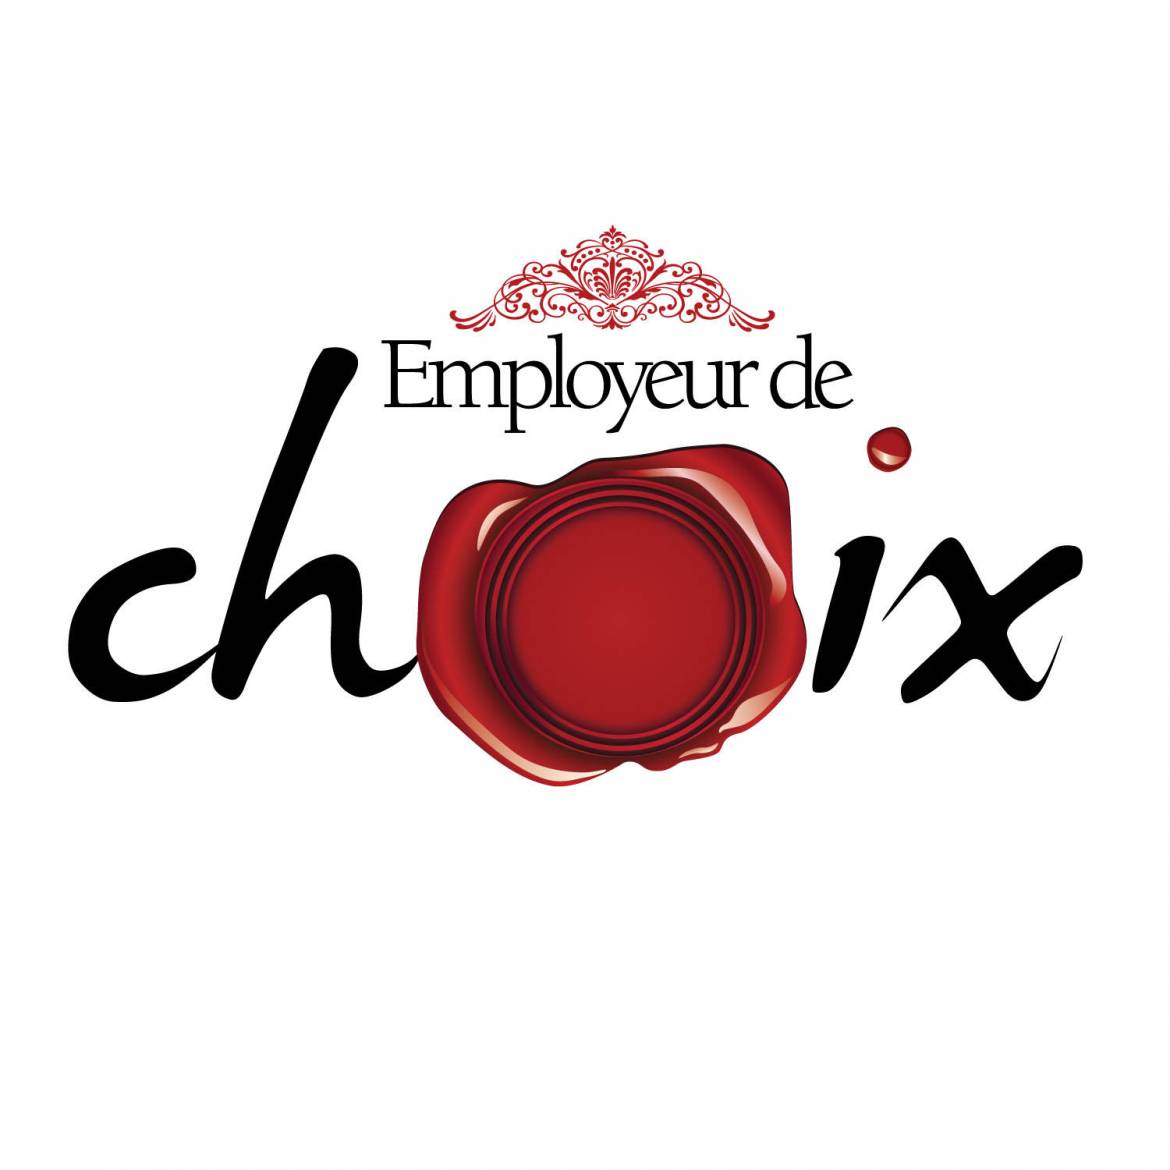 employeur_de_choix_logo_final.jpg